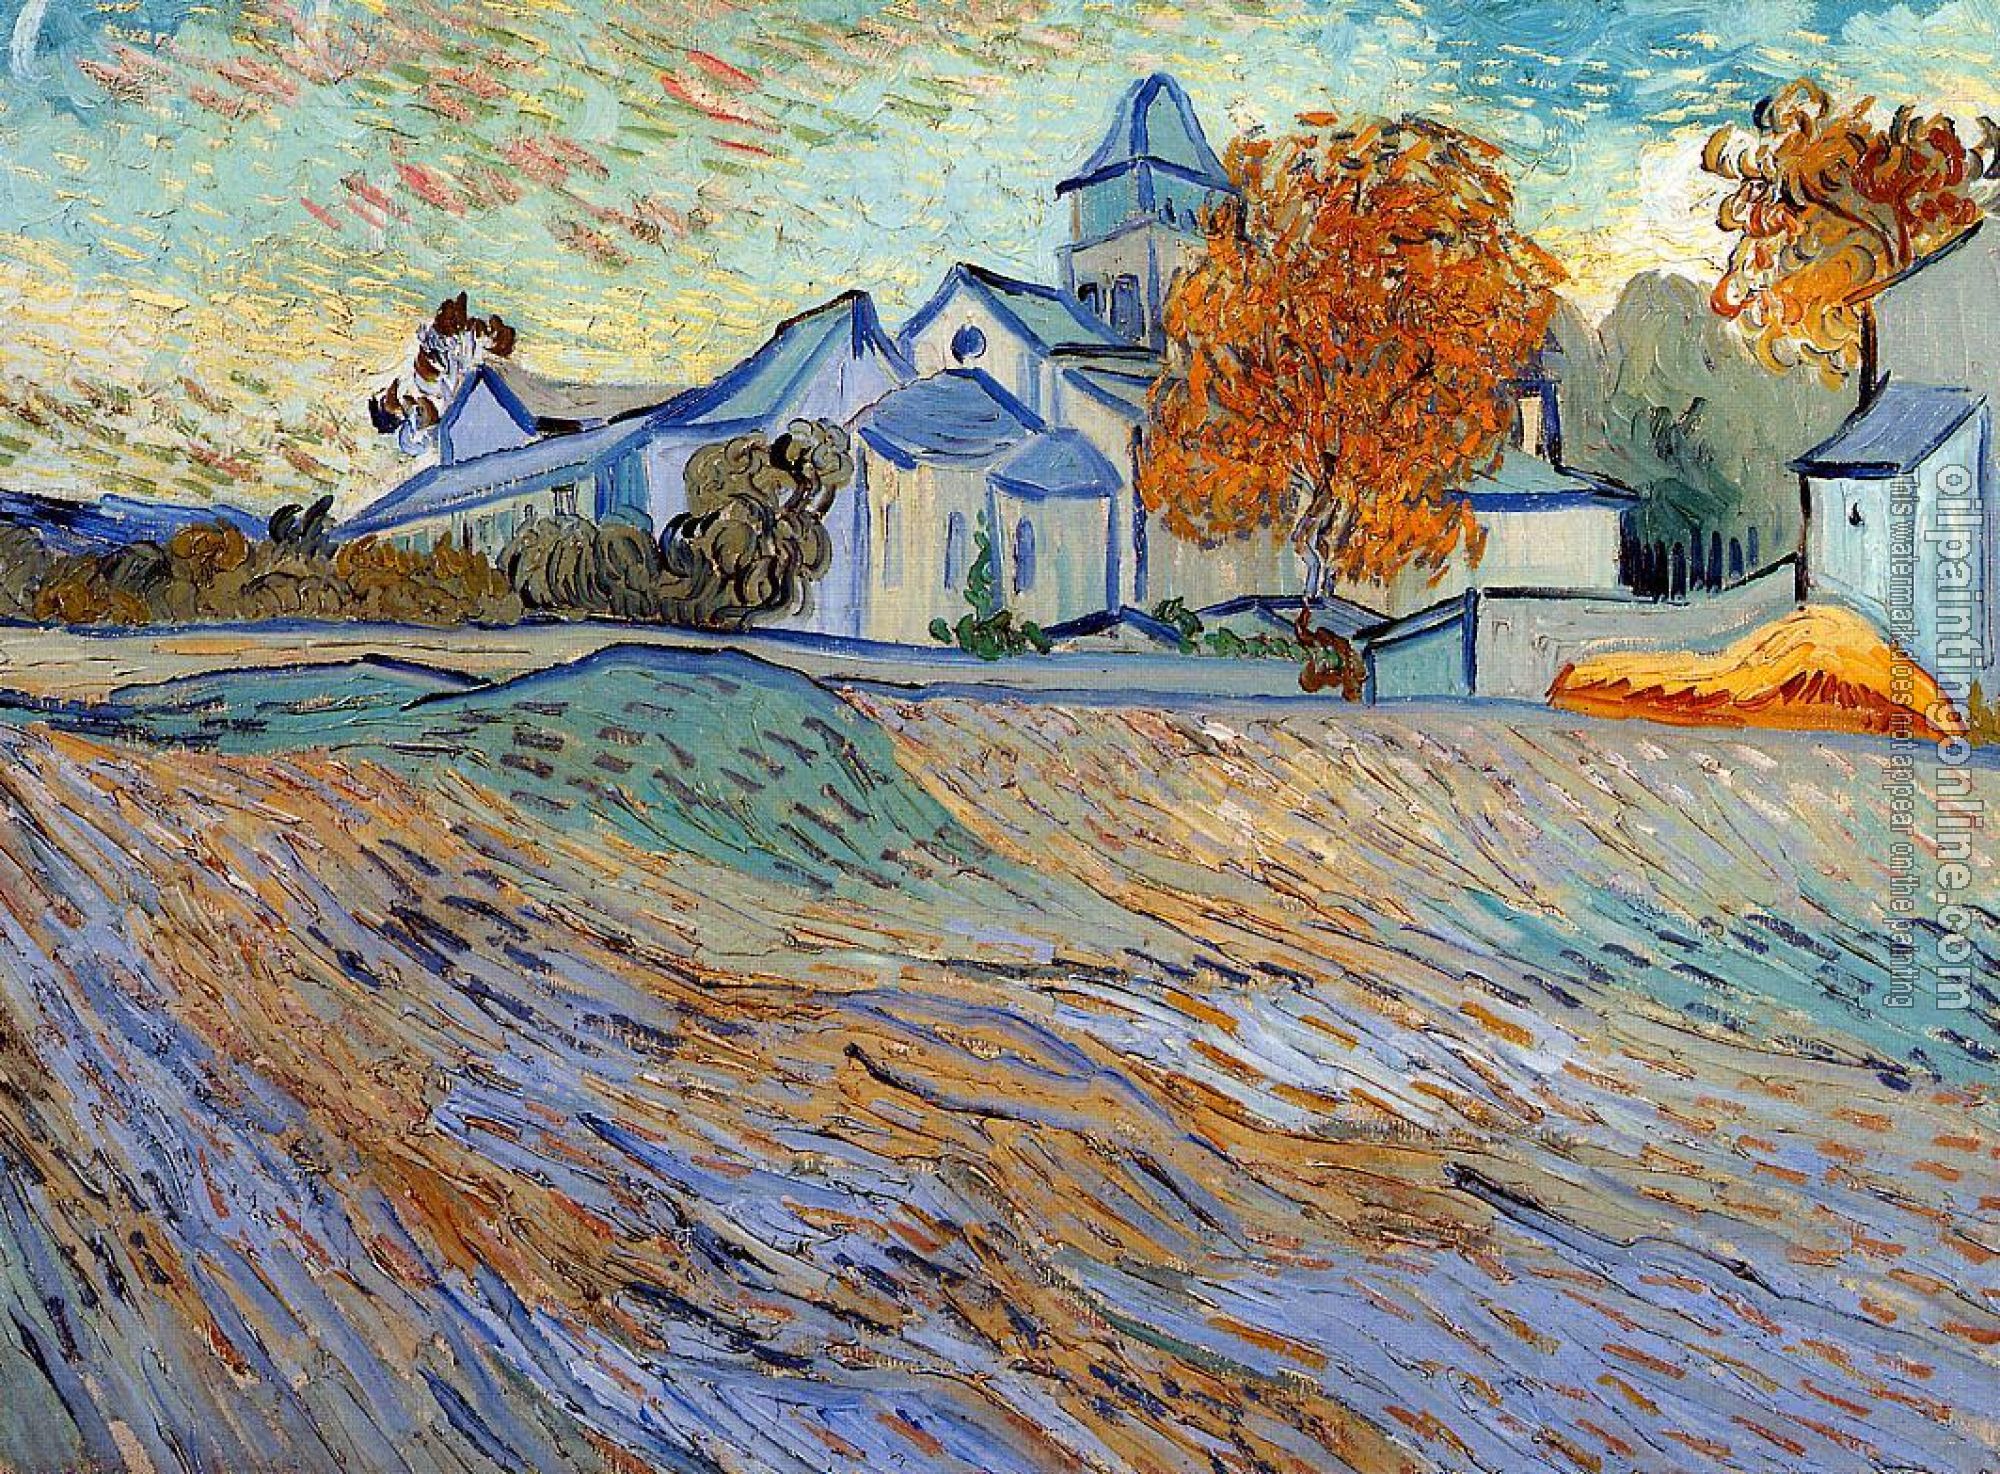 Gogh, Vincent van - View of the Church of Saint-Paul-de-Mausole